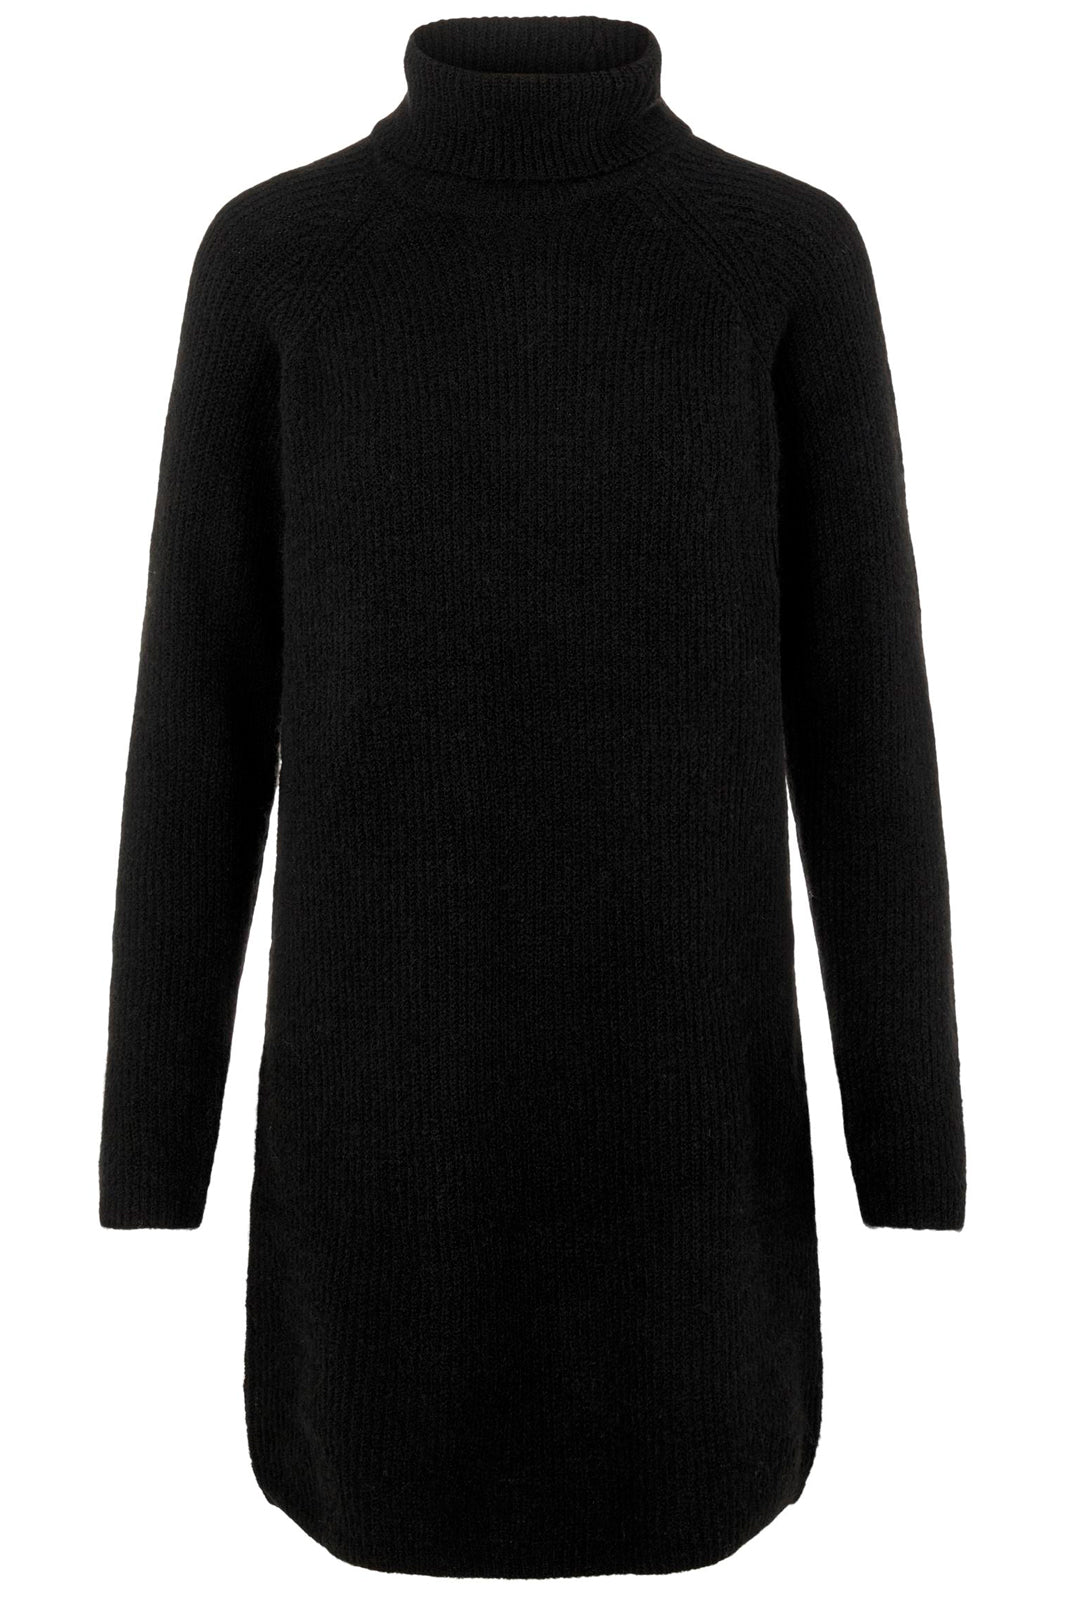 Pieces - PcEllen Ls High Neck Knit Dress Noos Bc - Black Kjoler 